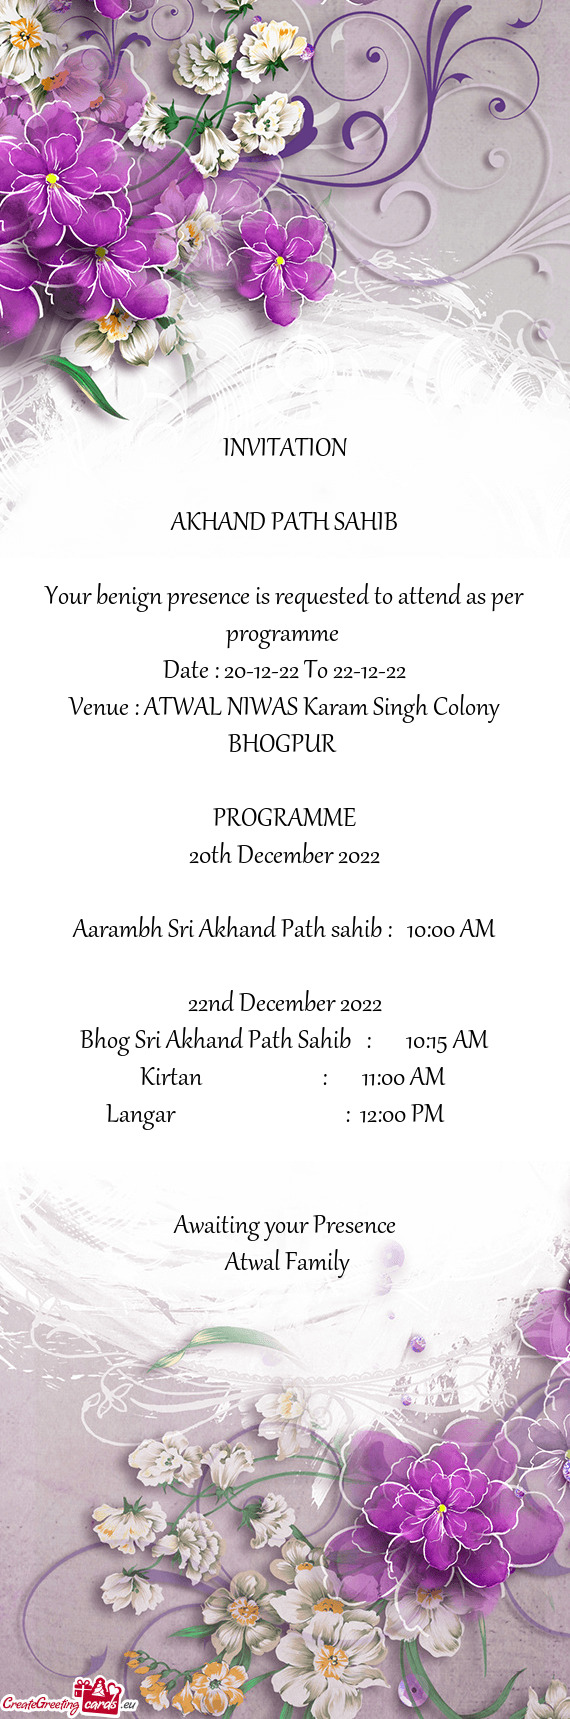 Venue : ATWAL NIWAS Karam Singh Colony BHOGPUR